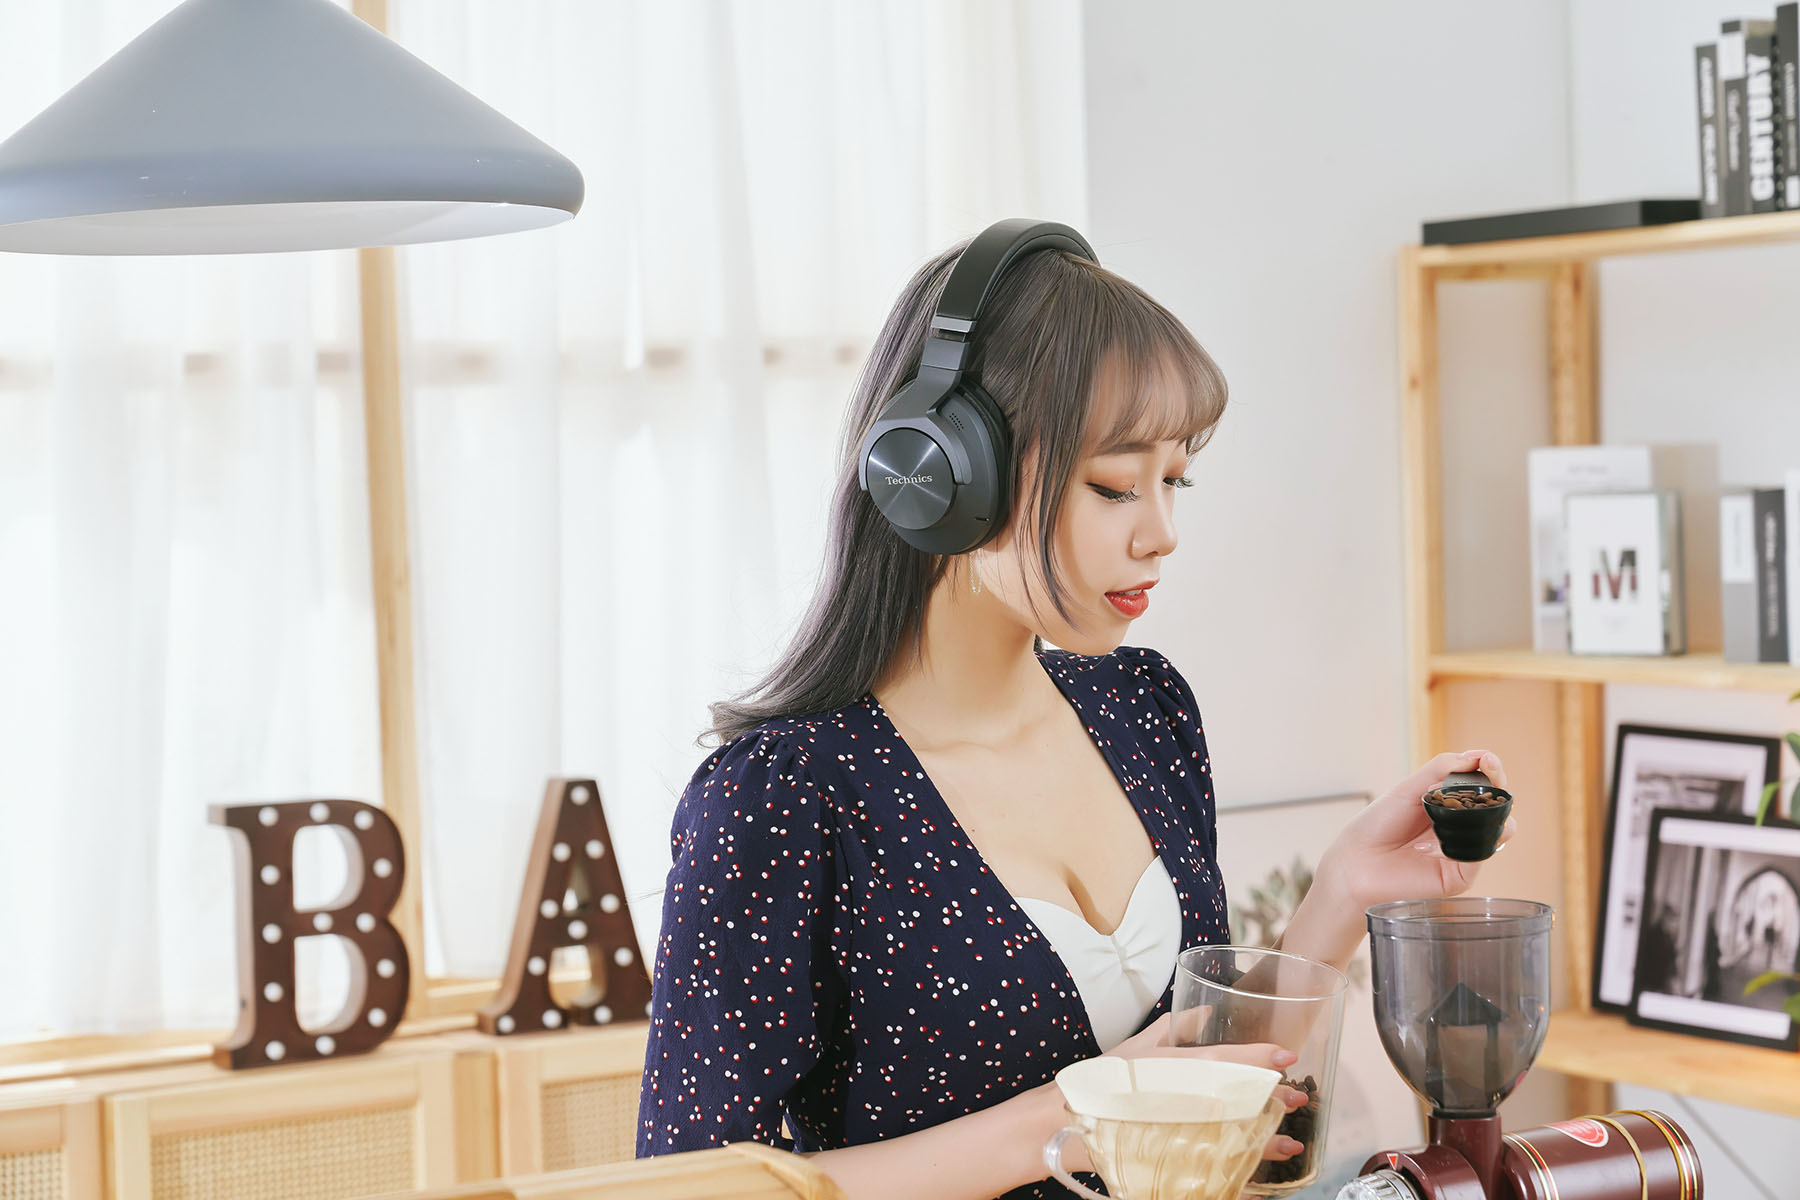  其咖啡館或賣場空間，EAH-A800 除了能讓現場環境聲響的低頻音域獲得有效抑制外，對於人聲的降低也有一定效果，使得聆聽音樂或影片音效的音量能夠大幅減少，避免長時間大音量聆賞會影響聽力。